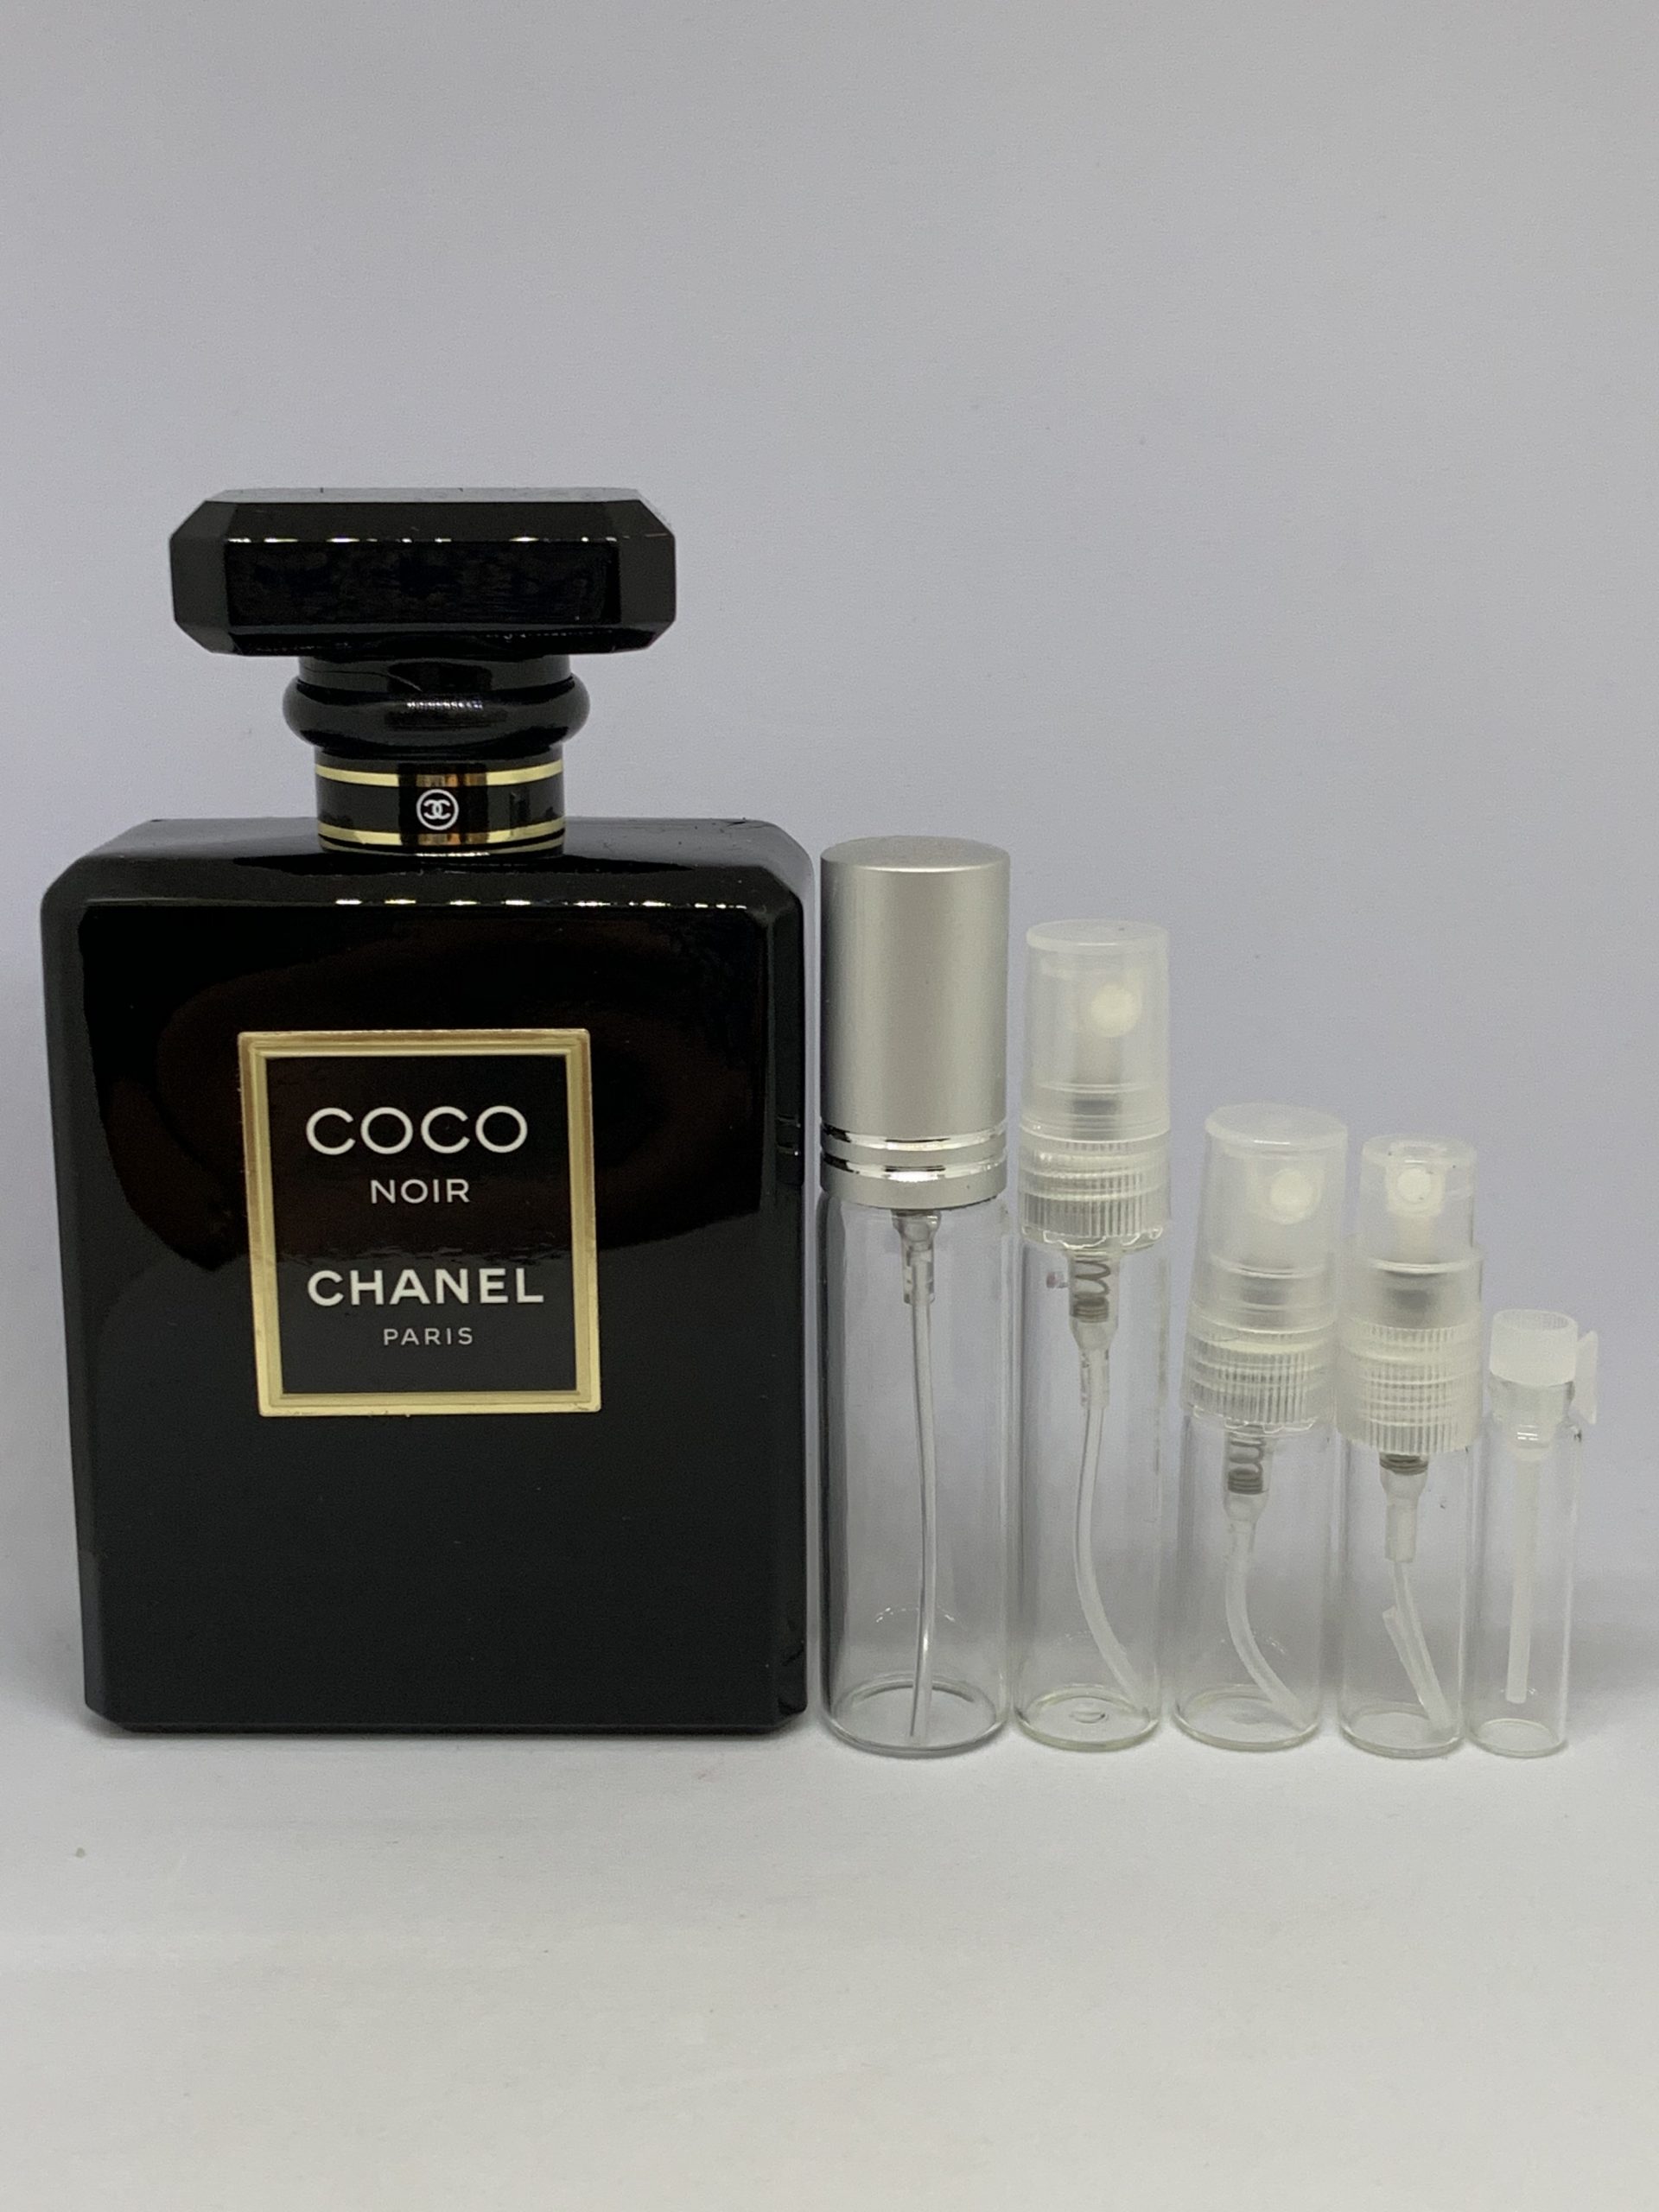 Chanel Coco Noir Eau de Parfum Sample/Decant